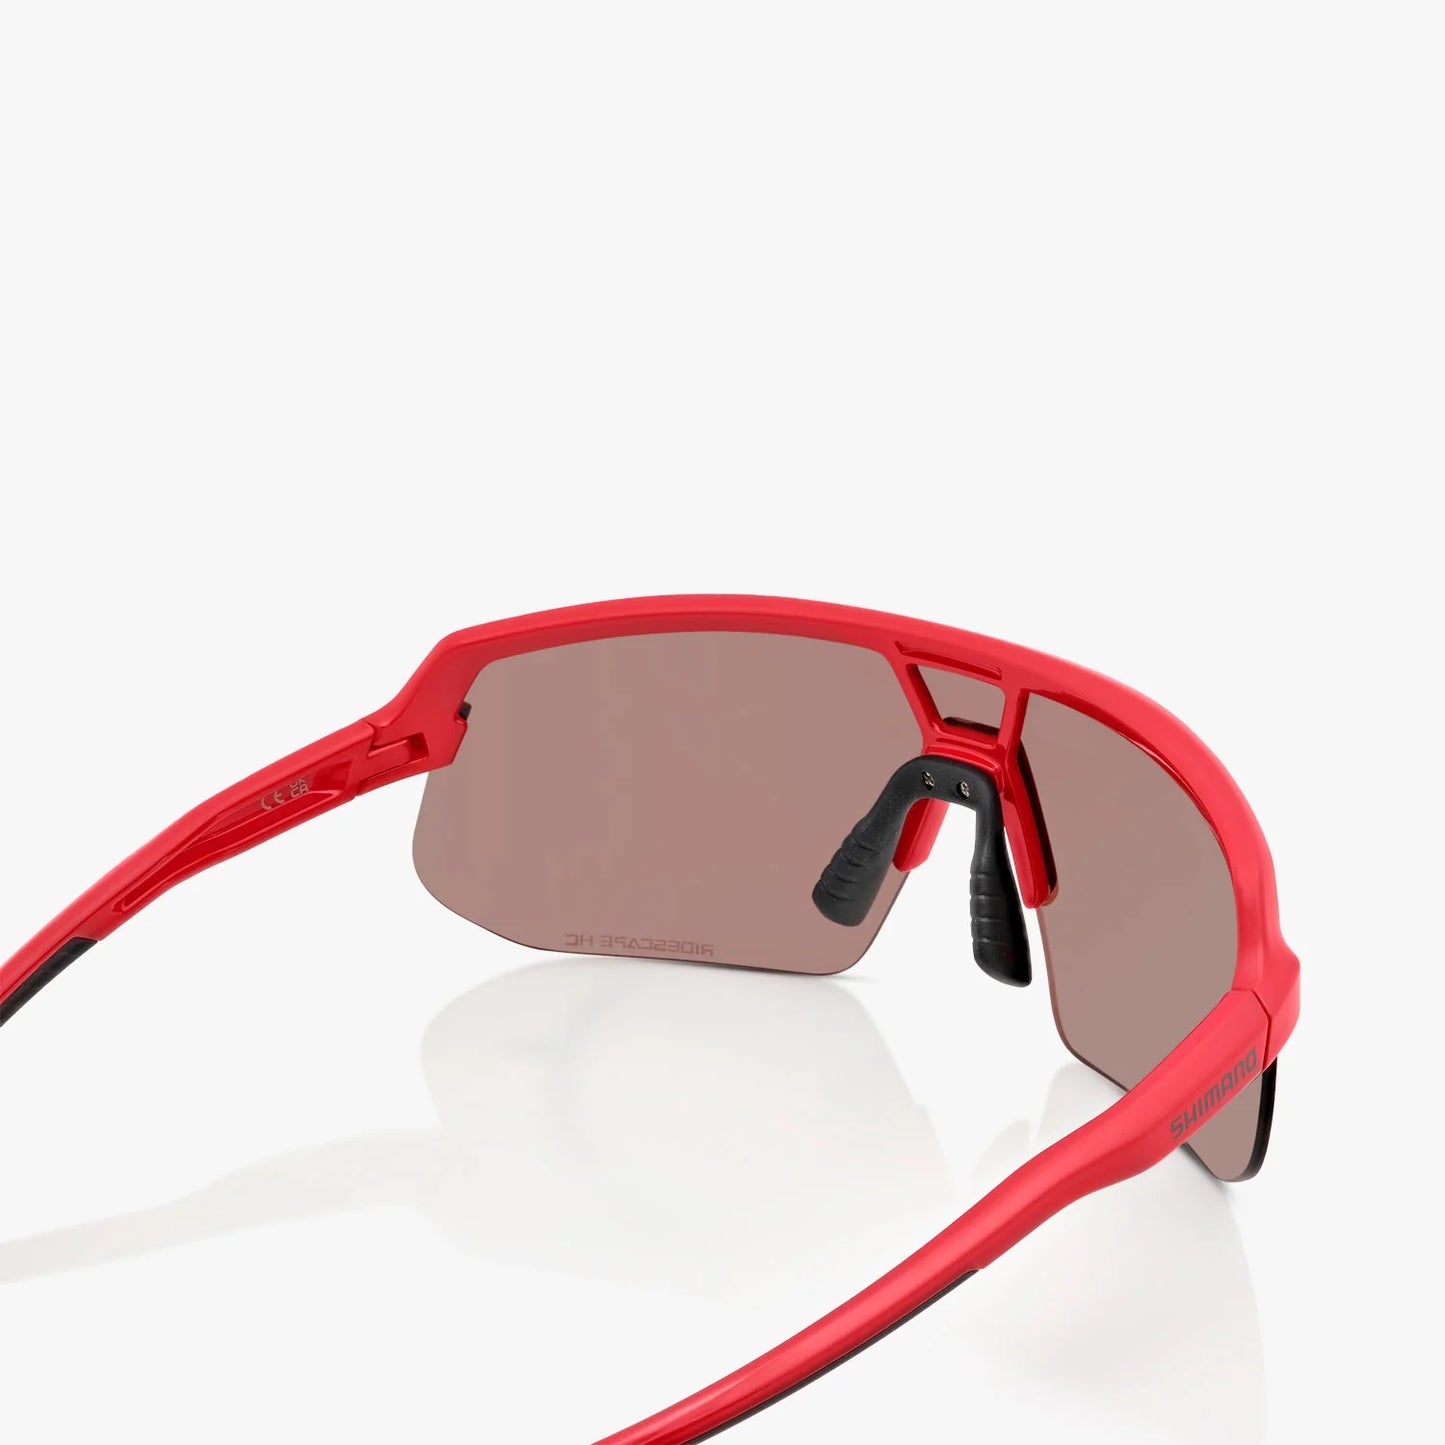 Shimano Twinspark 2 Sunglasses - Deep Red - Ridescape High Contrast Lens